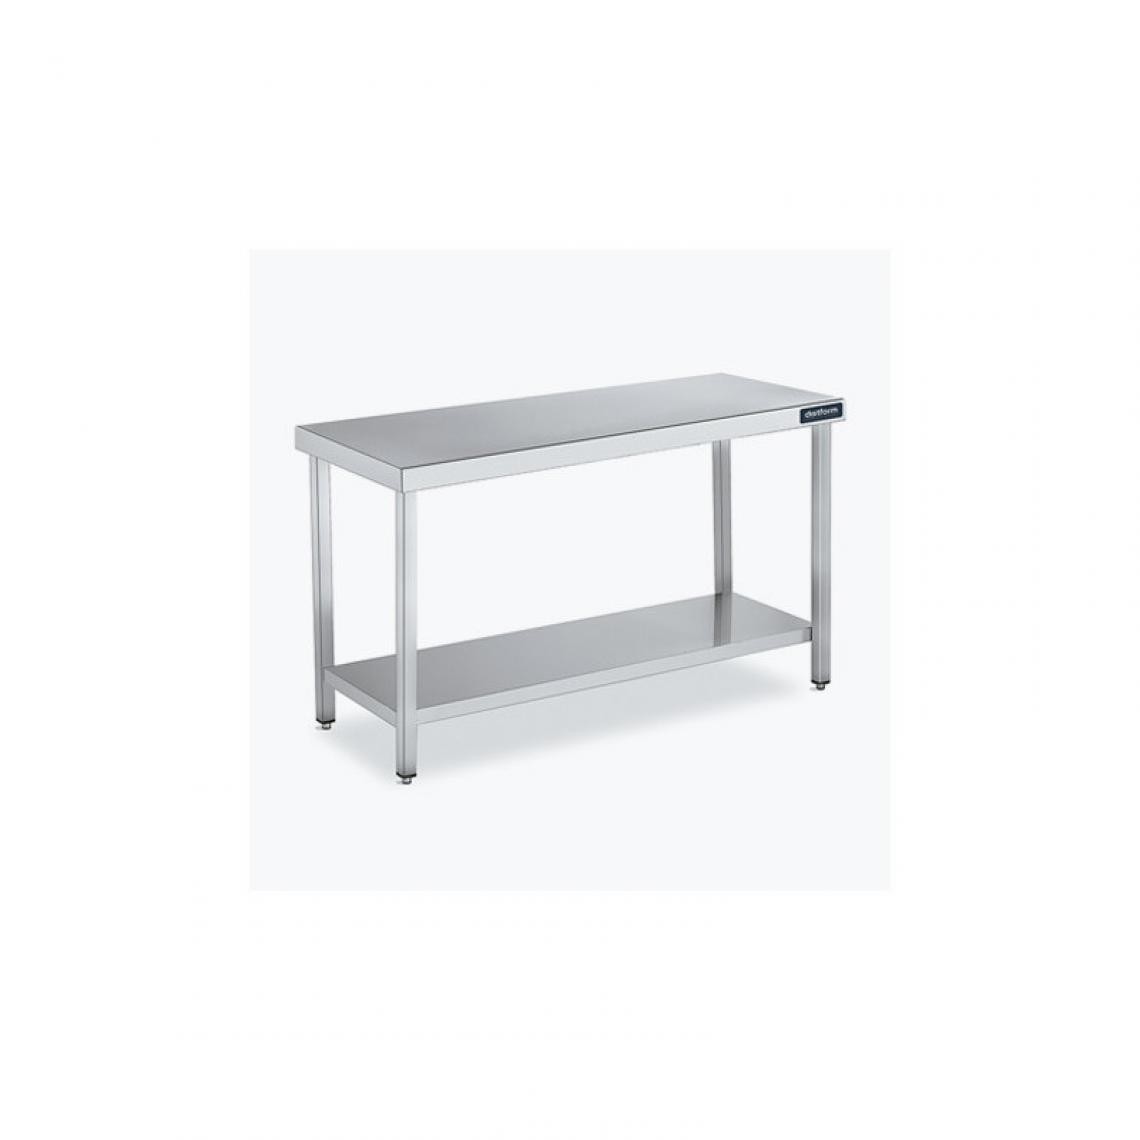 DISTFORM - Table Centrale 600x900 avec Étagère - Distform - Inox 18/101600x900x850mm - Tables à manger